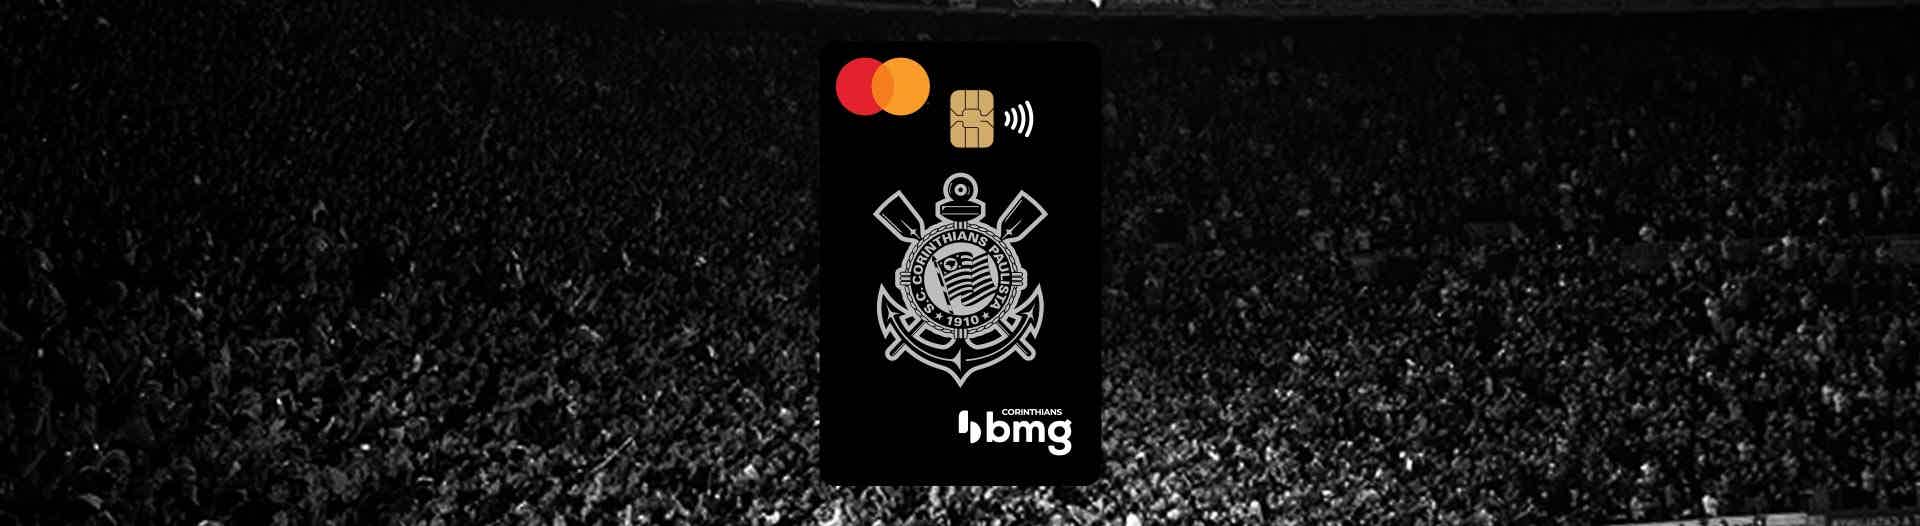 Cartão de crédito Corinthias BMG: o que é o Corinthias BMG? Imagem: banco bmg